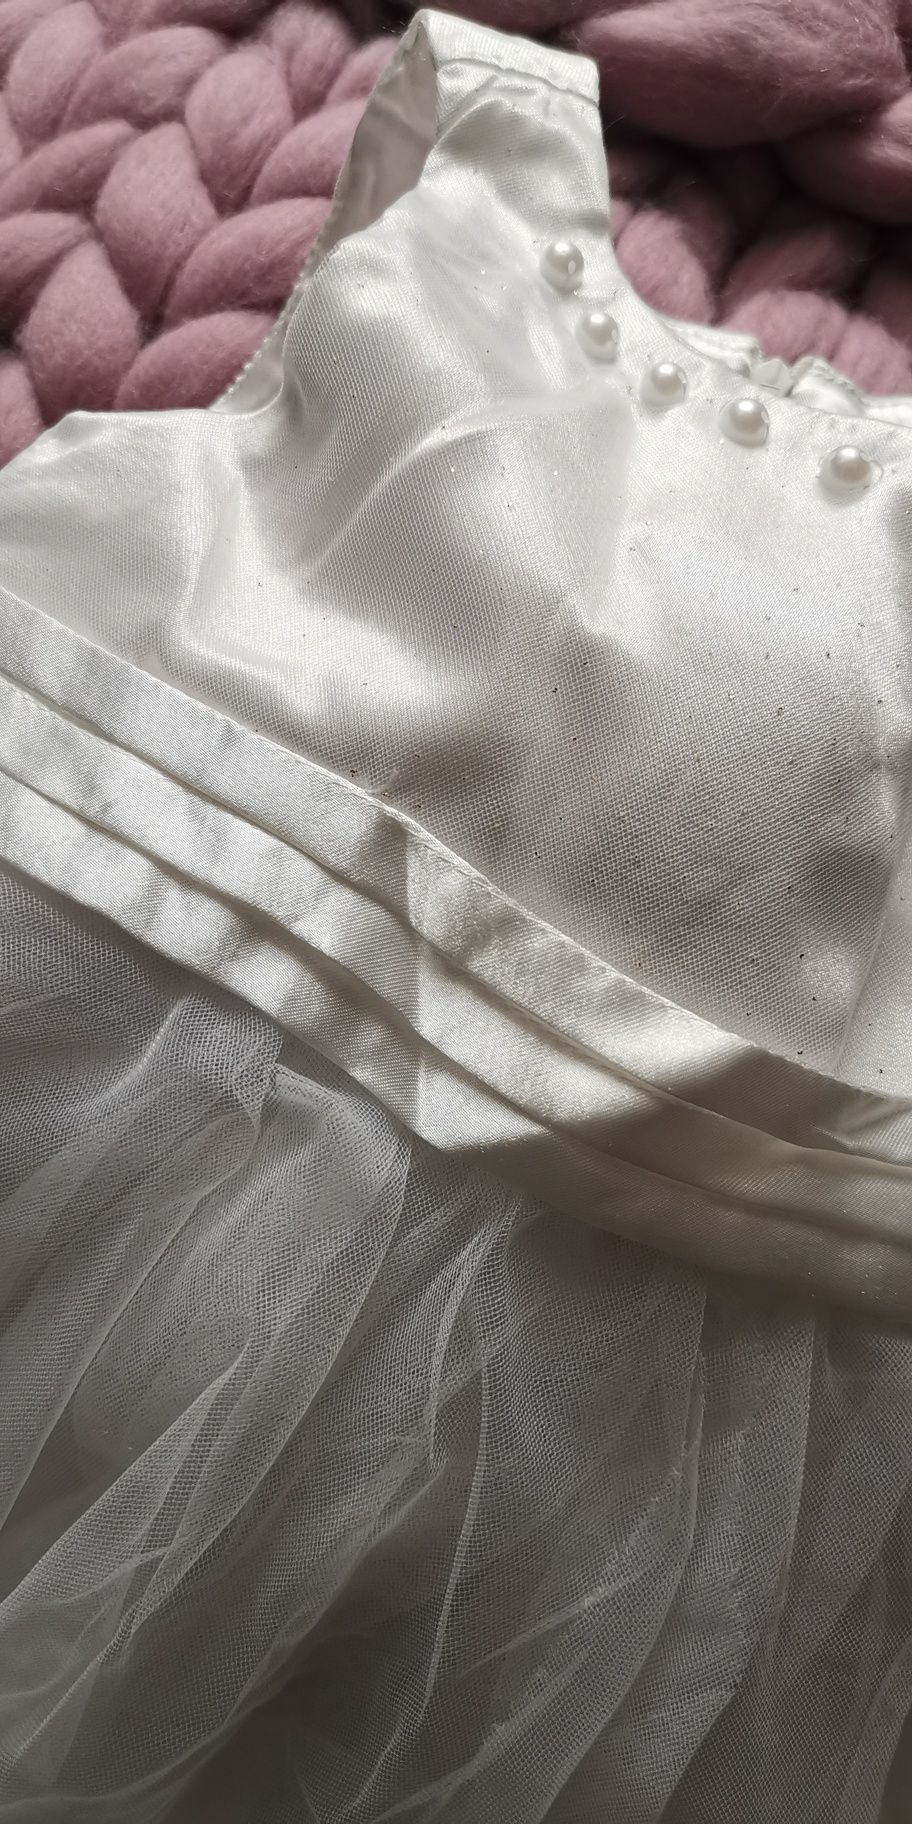 Sukienka biała na chrzest